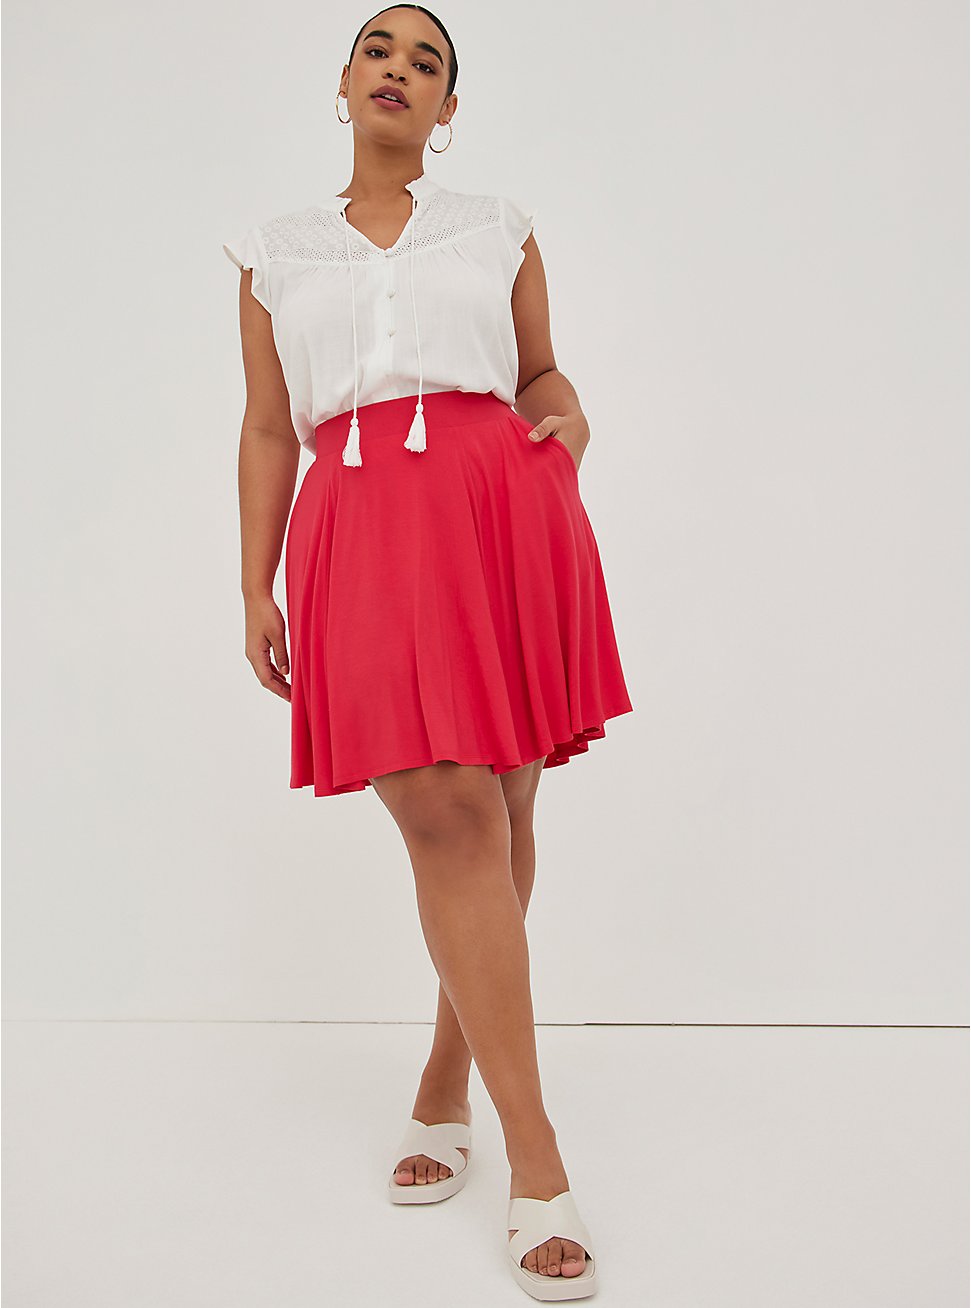 Circle Skirt - Jersey Pink, VIVA MAGENTA, hi-res